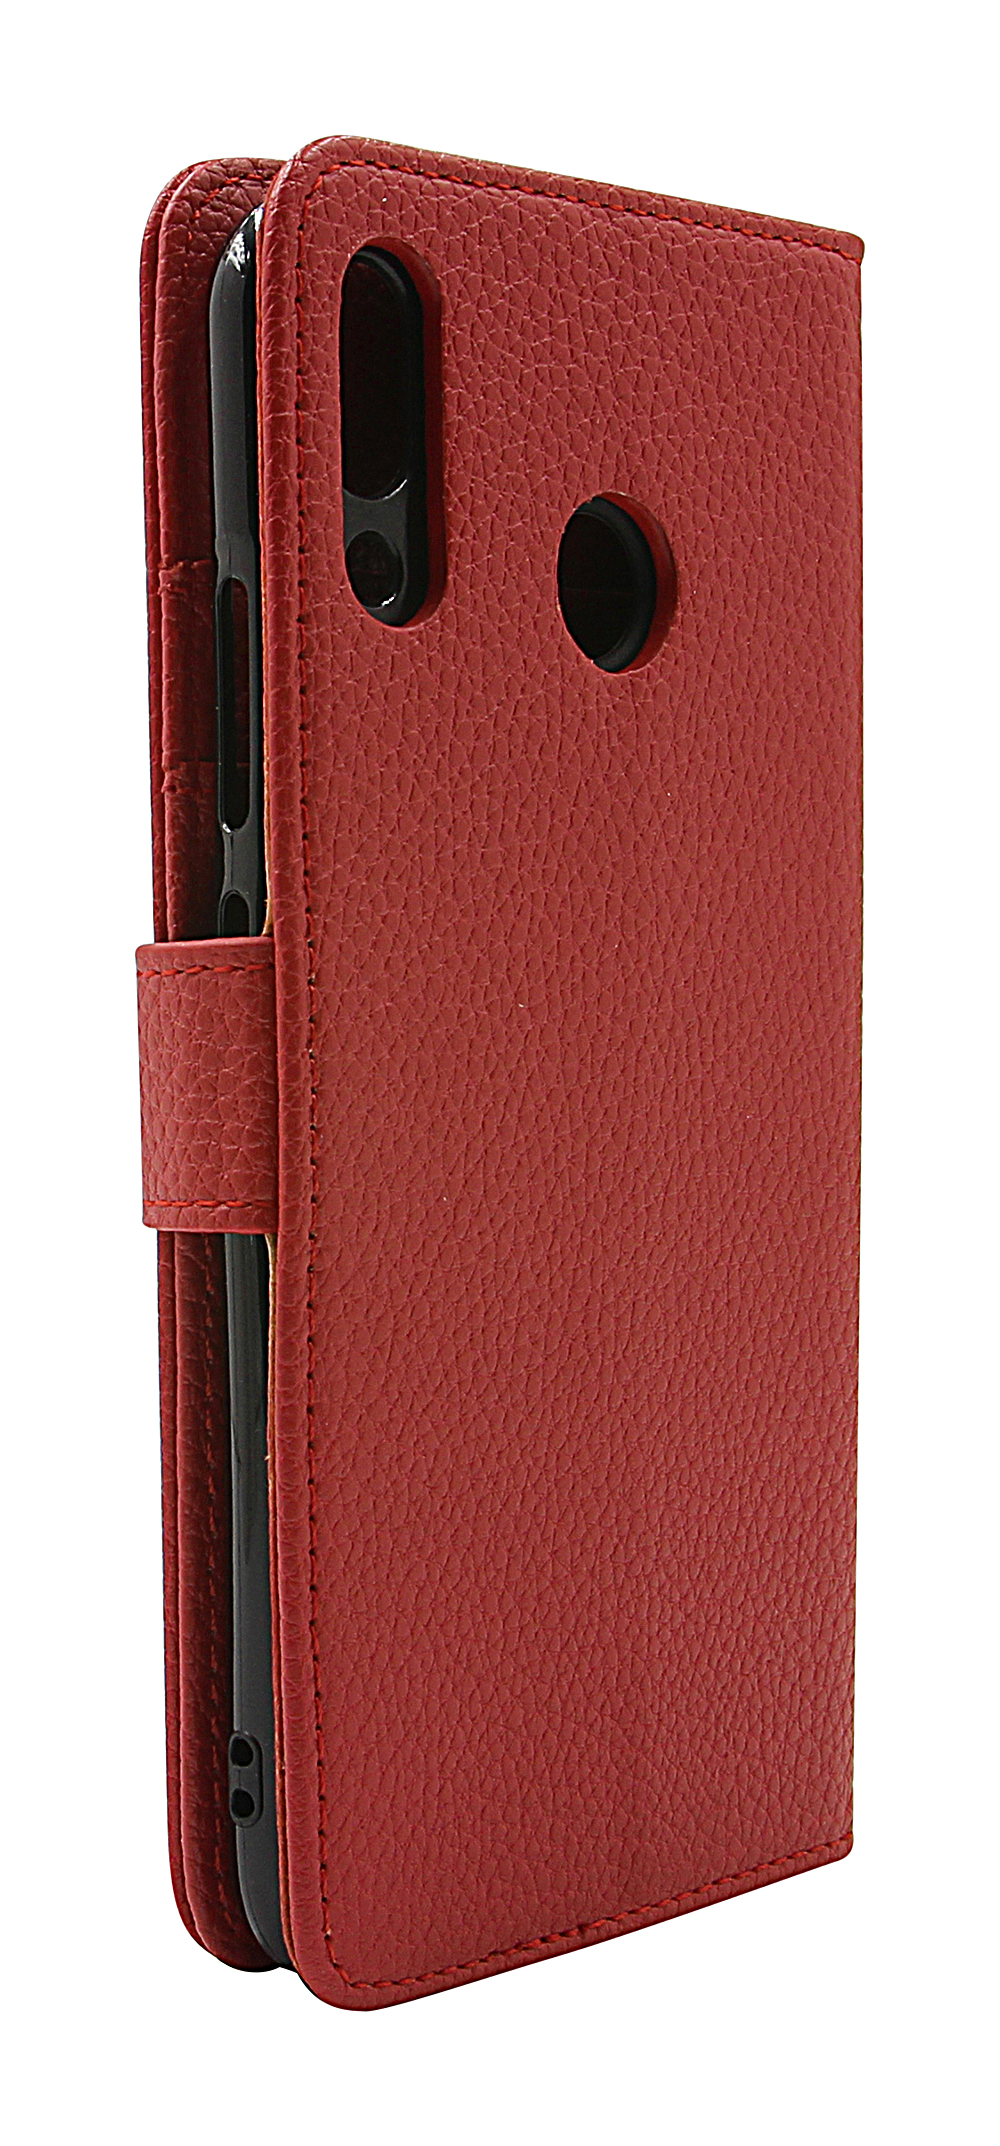 New Standcase Wallet Asus ZenFone 5 (ZE620KL)